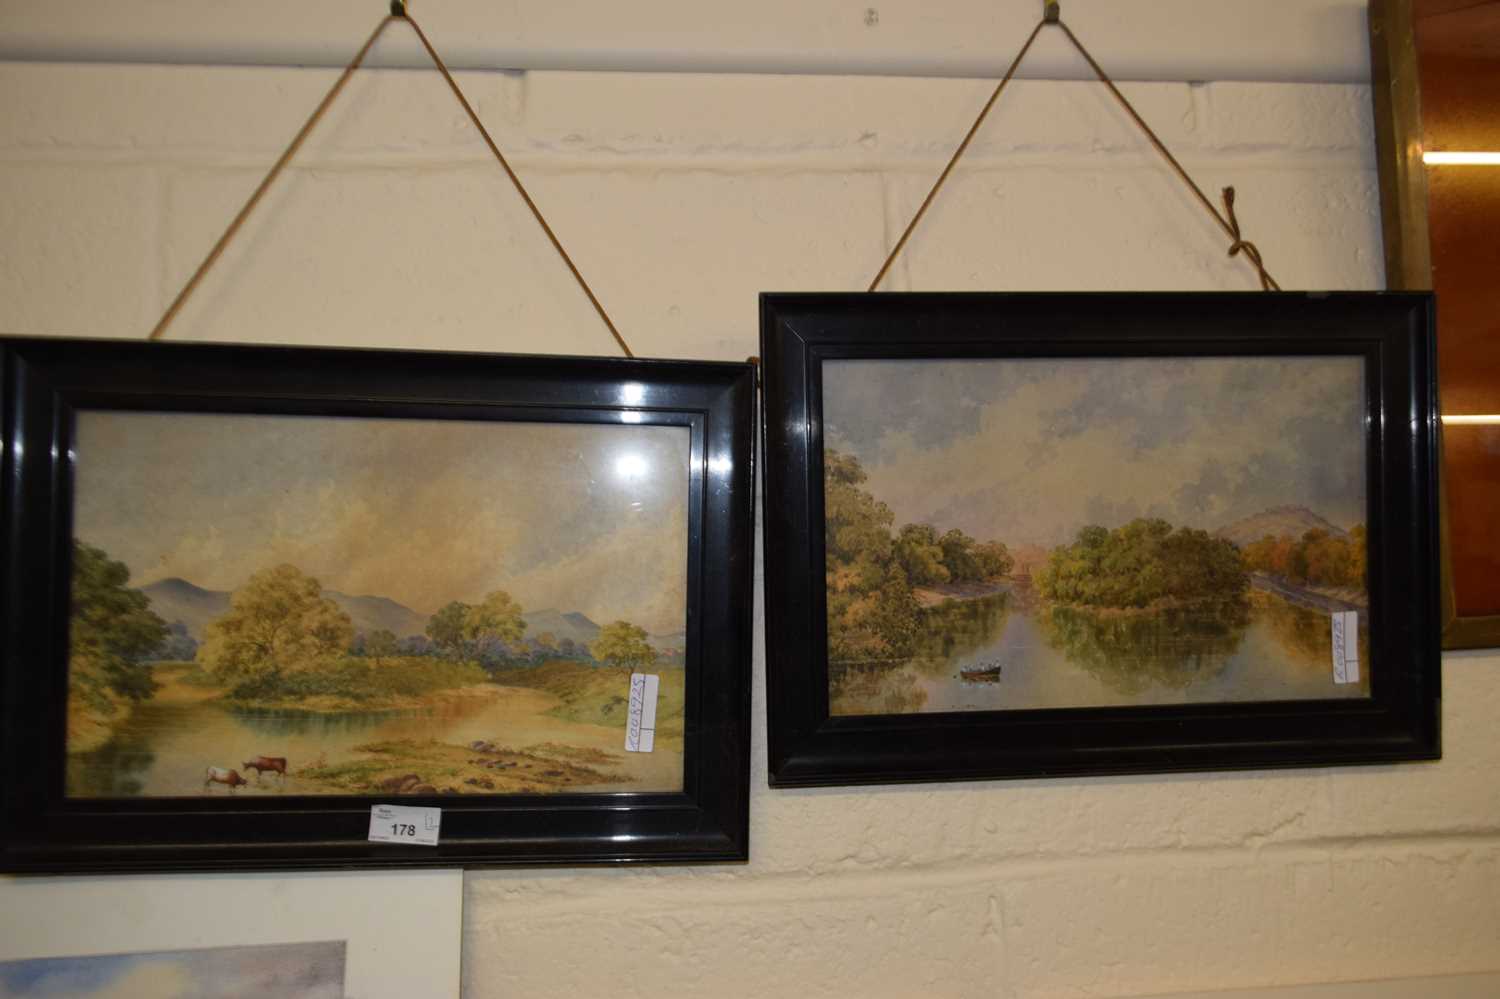 Pair of studies or river landscapes set in ebonised frames